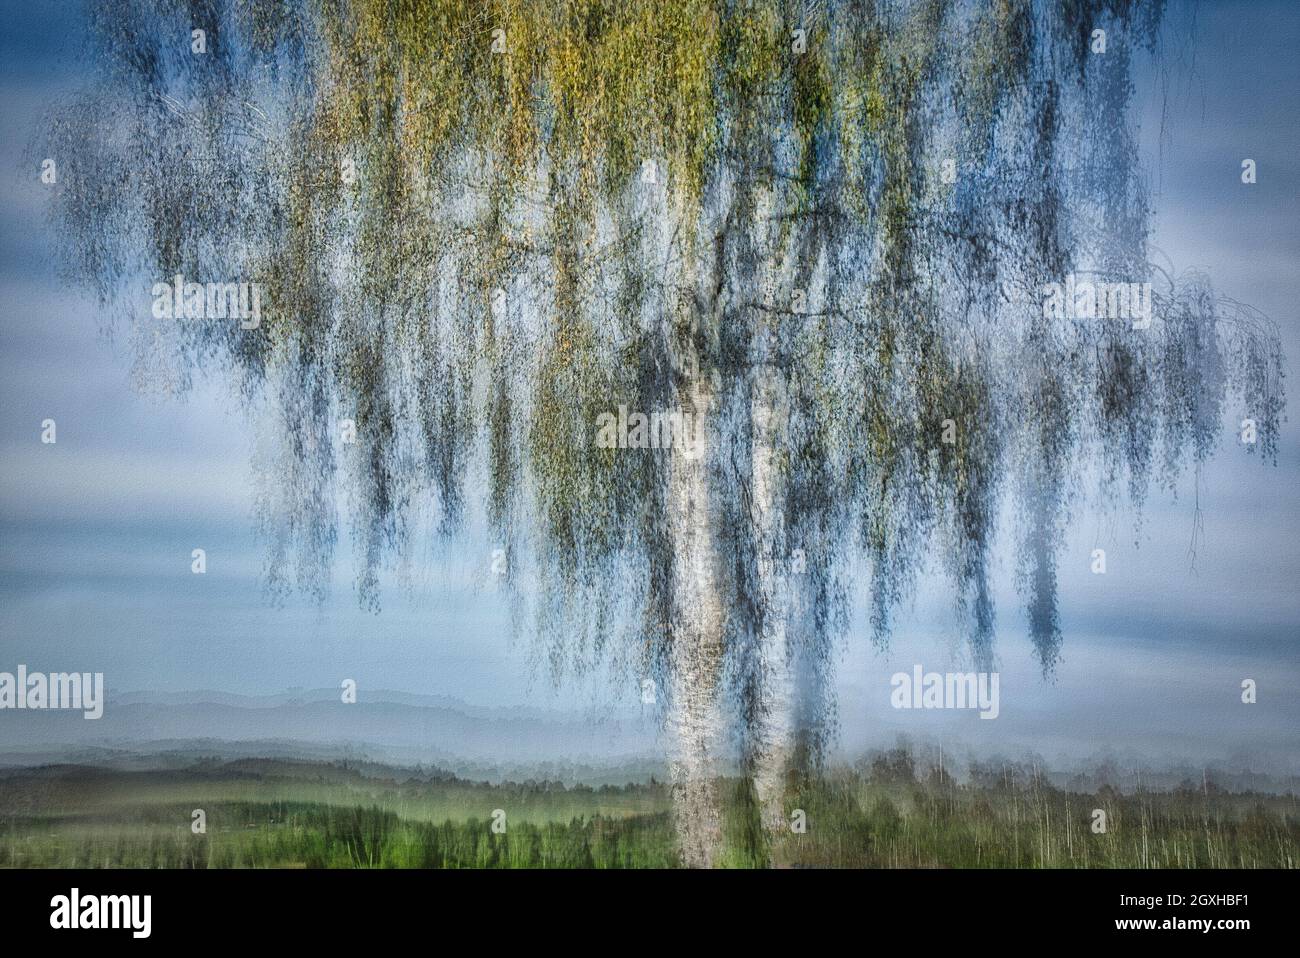 CONTEMPORARY ART: Aspen Tree in the Moor  (Bavaria, Germany) Stock Photo